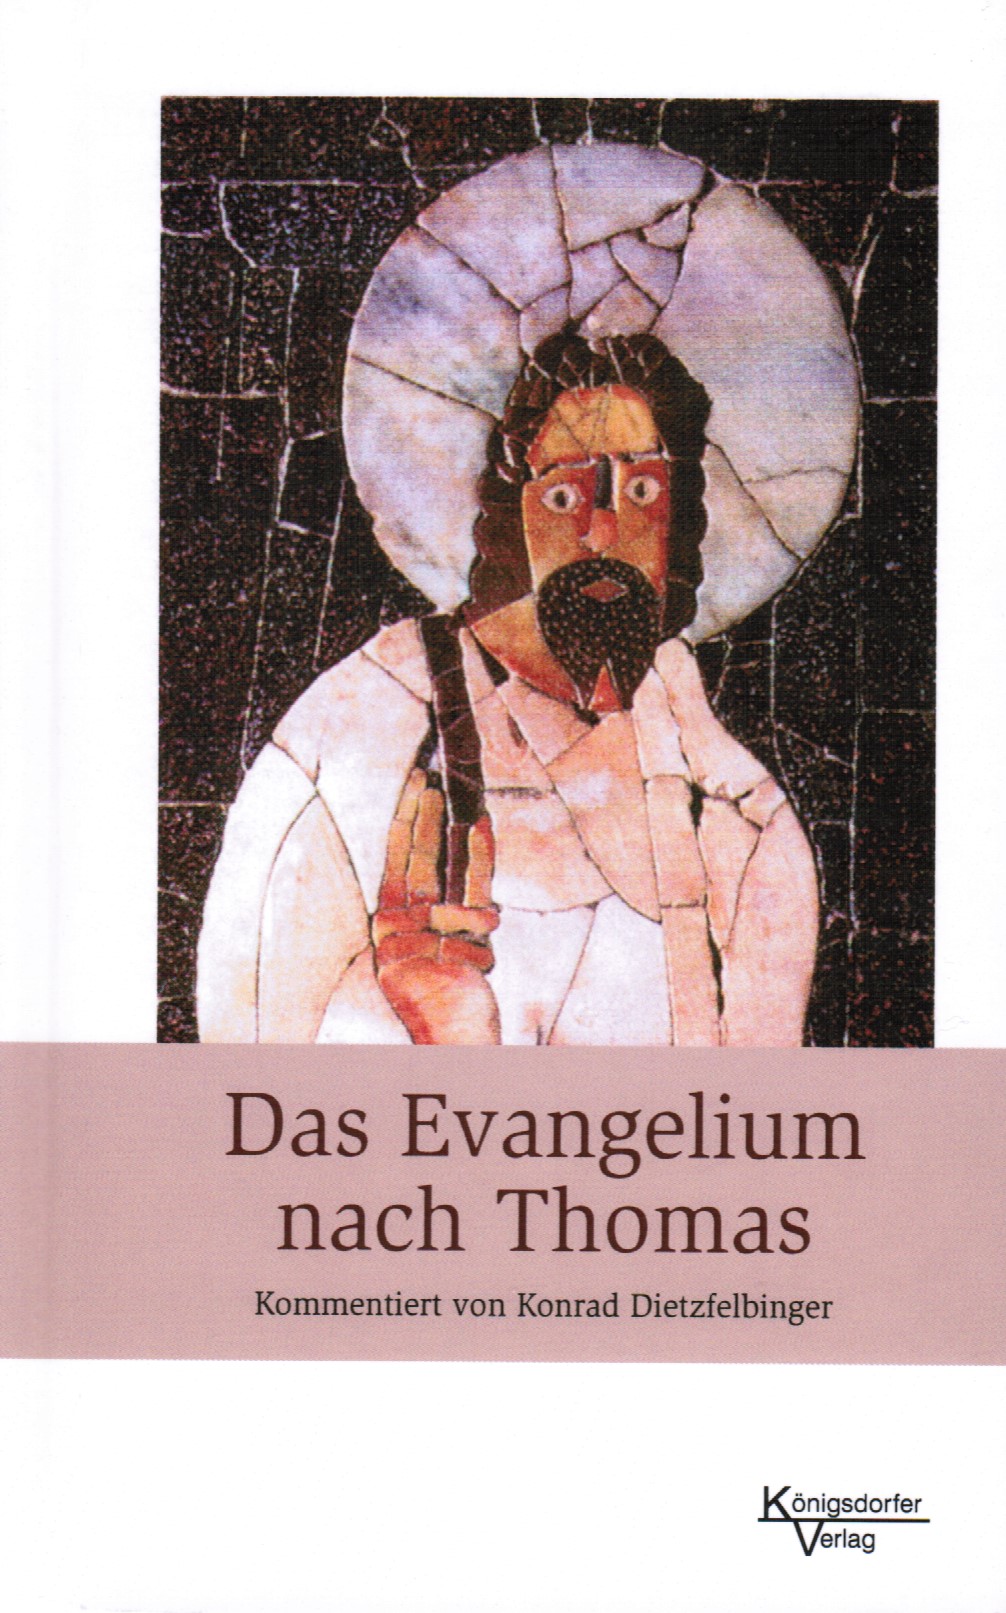 Das Evangelium nach Thomas, Kommentiert und interpretiert von Konrad Dietzfelbinger